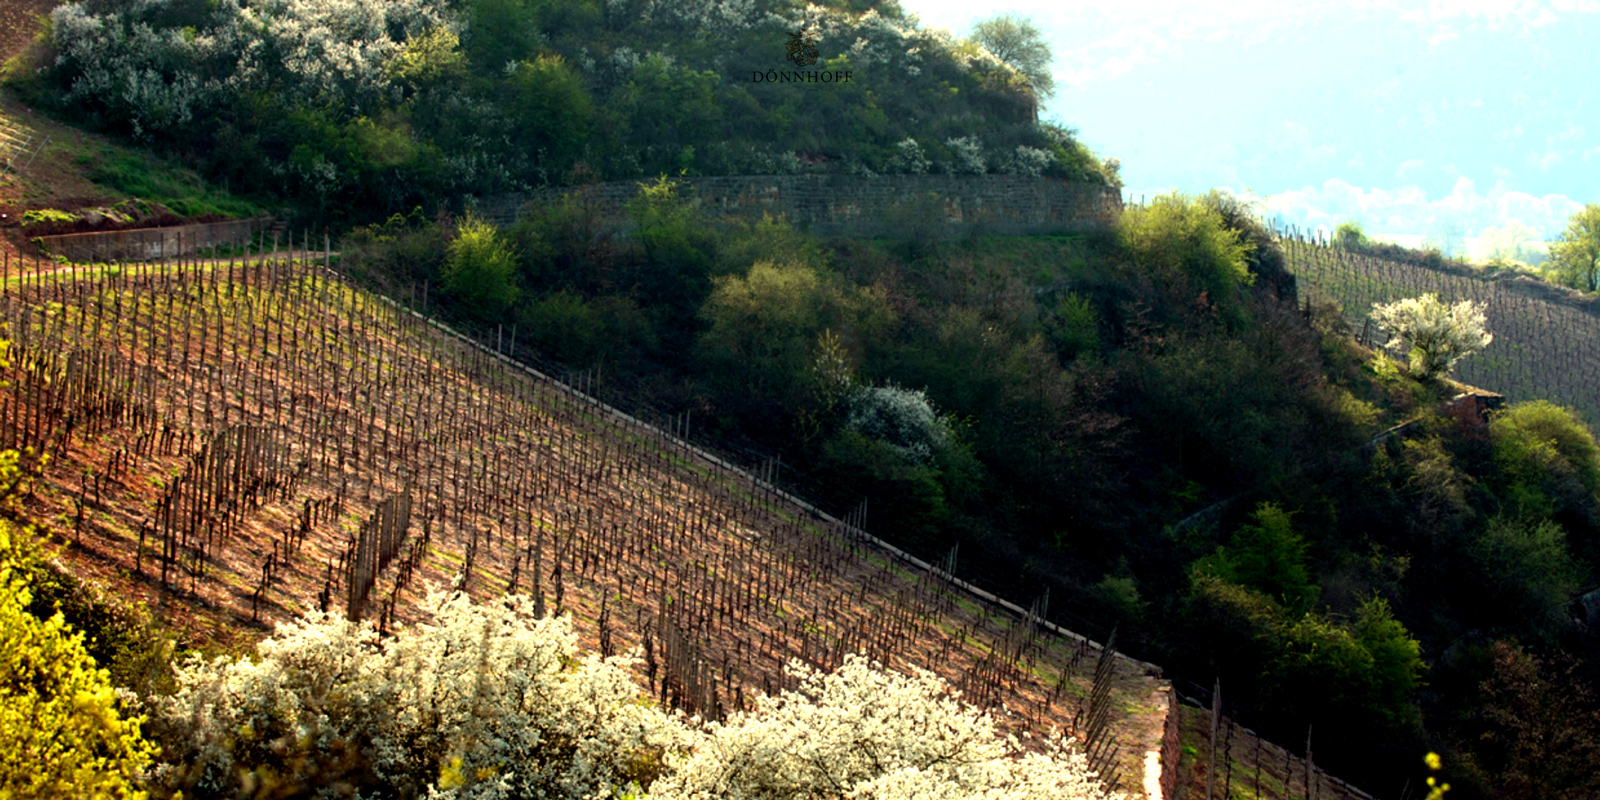 Vinarija Donnhoff - v blizini Naso druzino je oblikovalo nase globoko razumevanje velikih vinogradov na izjemnih legah. Ljubezen do vinske trte in vsakoletne nove sanje o prepoznavnih vinih se prenasajo skozi generacije. Cornelius Donnhoff zdaj nosi odgovornost v druzinski tradiciji.